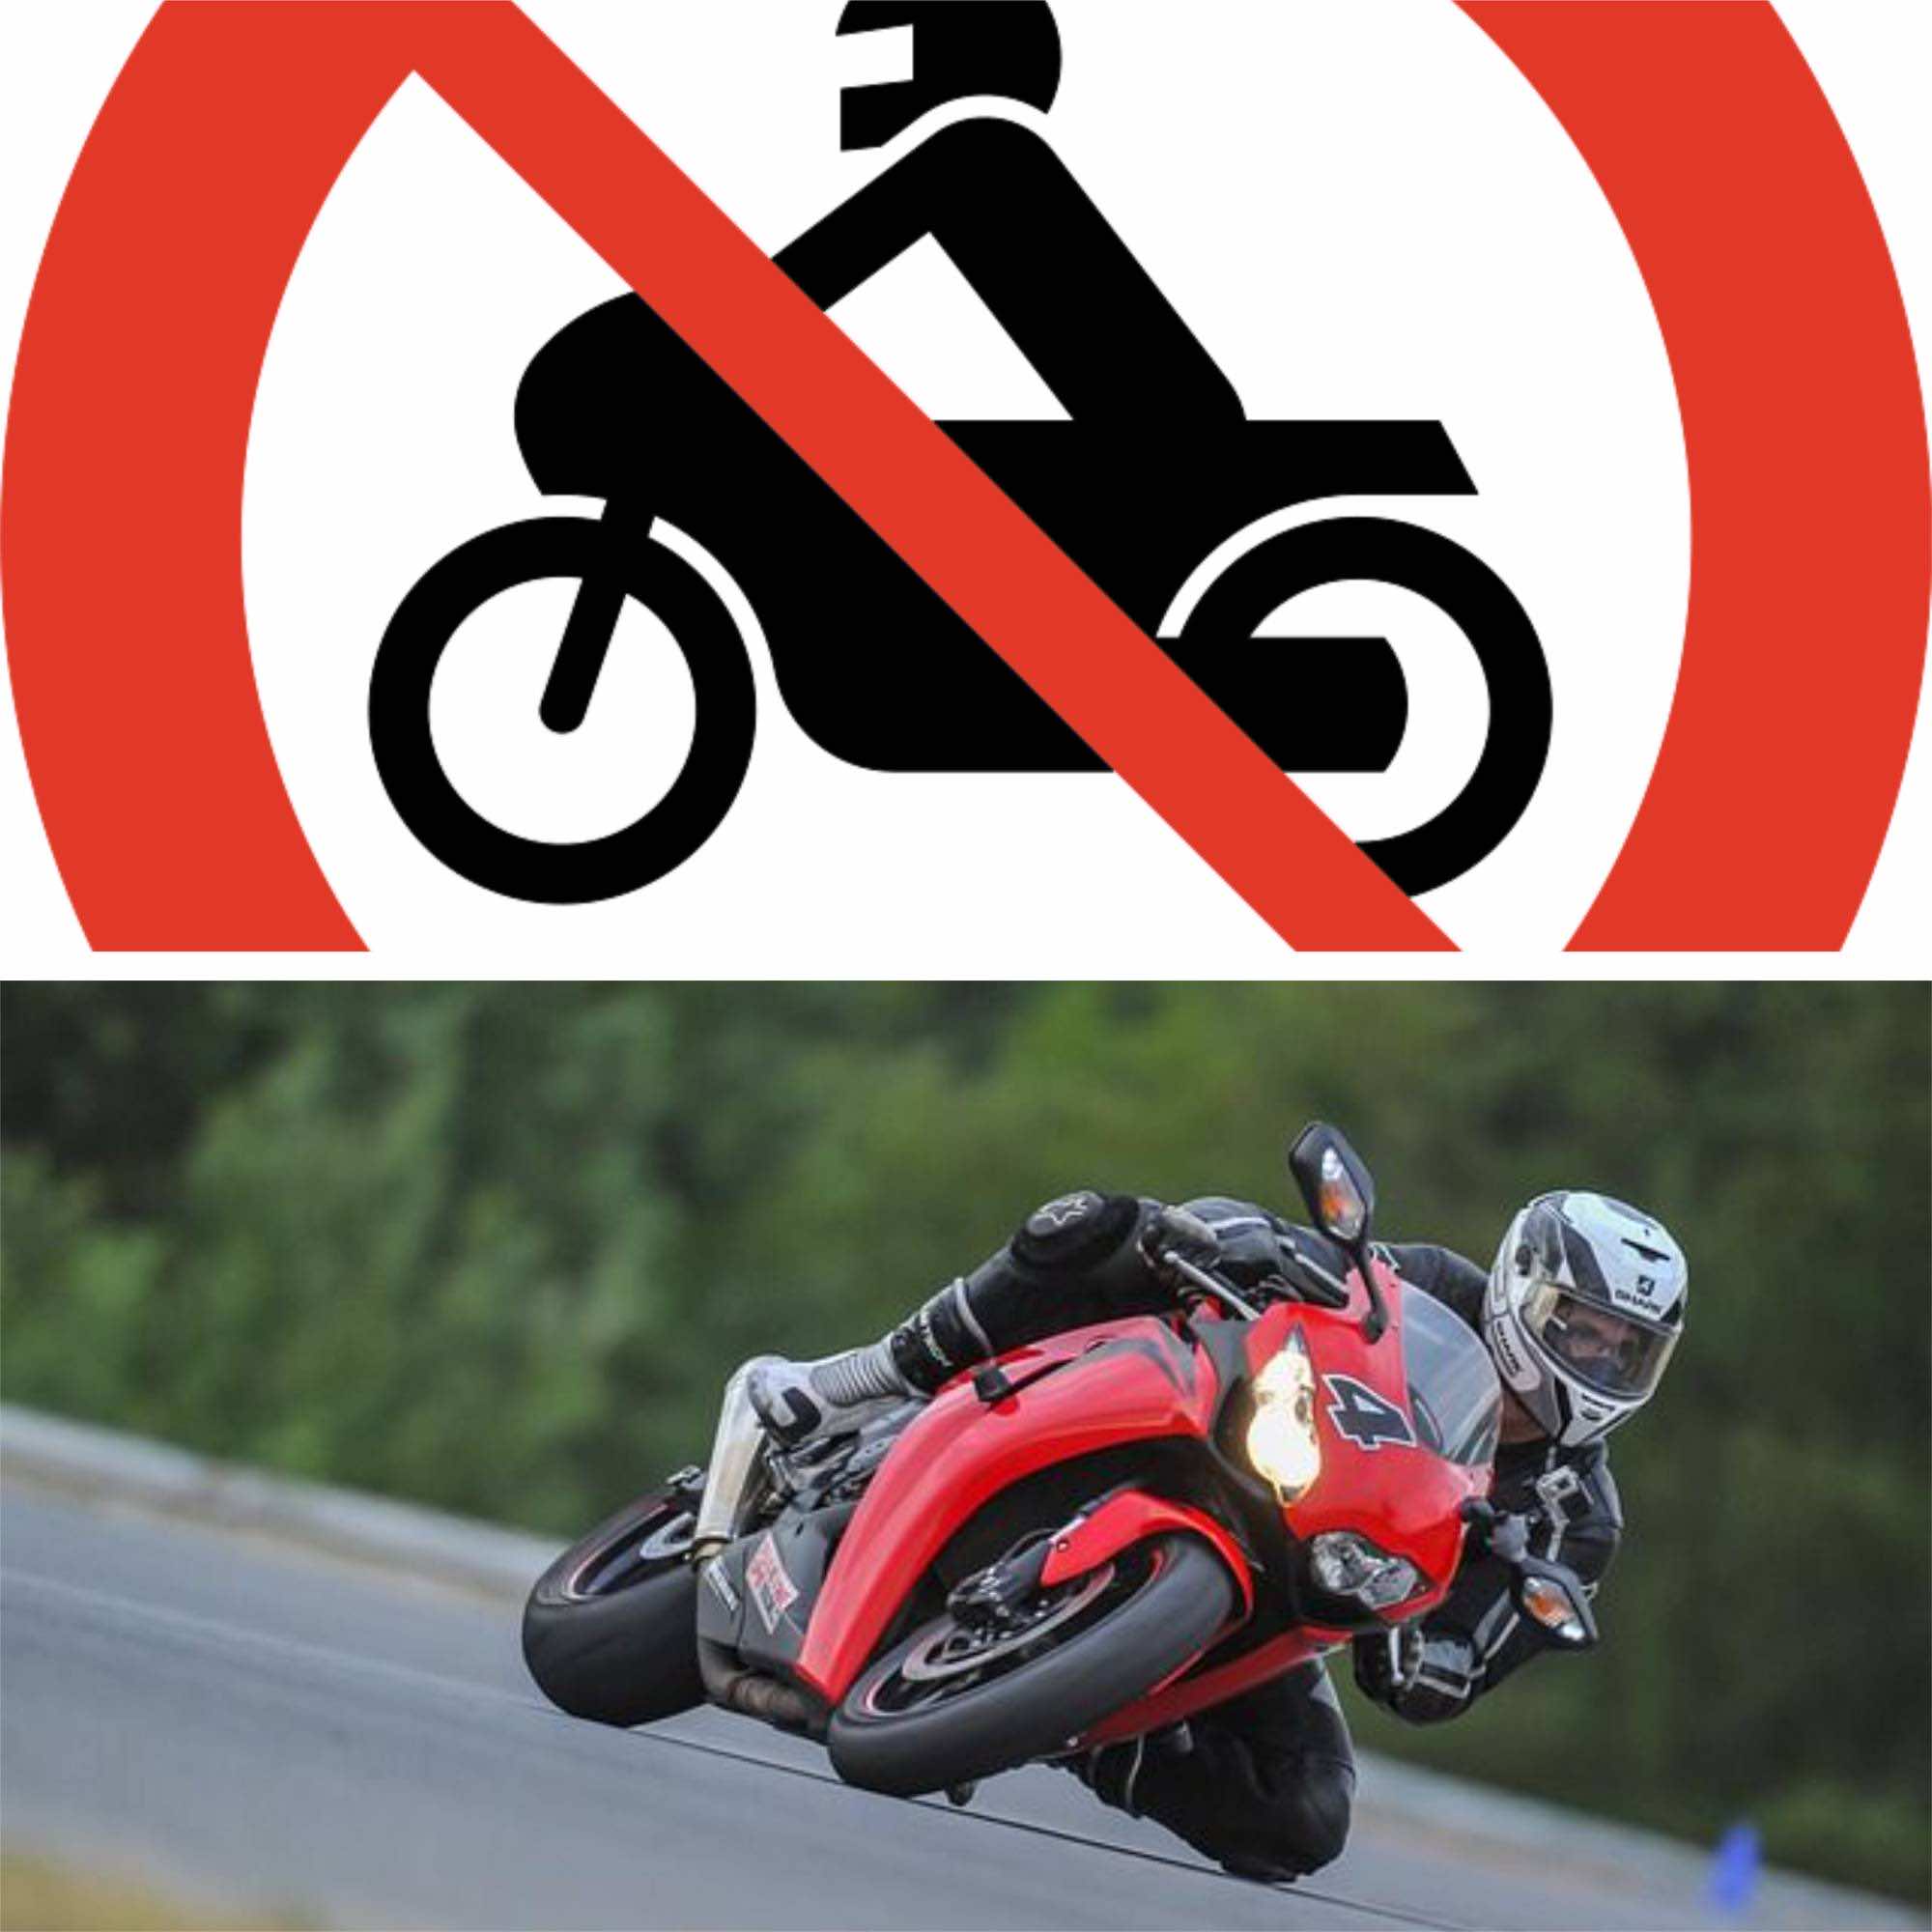 σήμανση απαγόρευσης μοτοσικλέτας και μοτοσικλέτα κινούμενη στο δρόμο